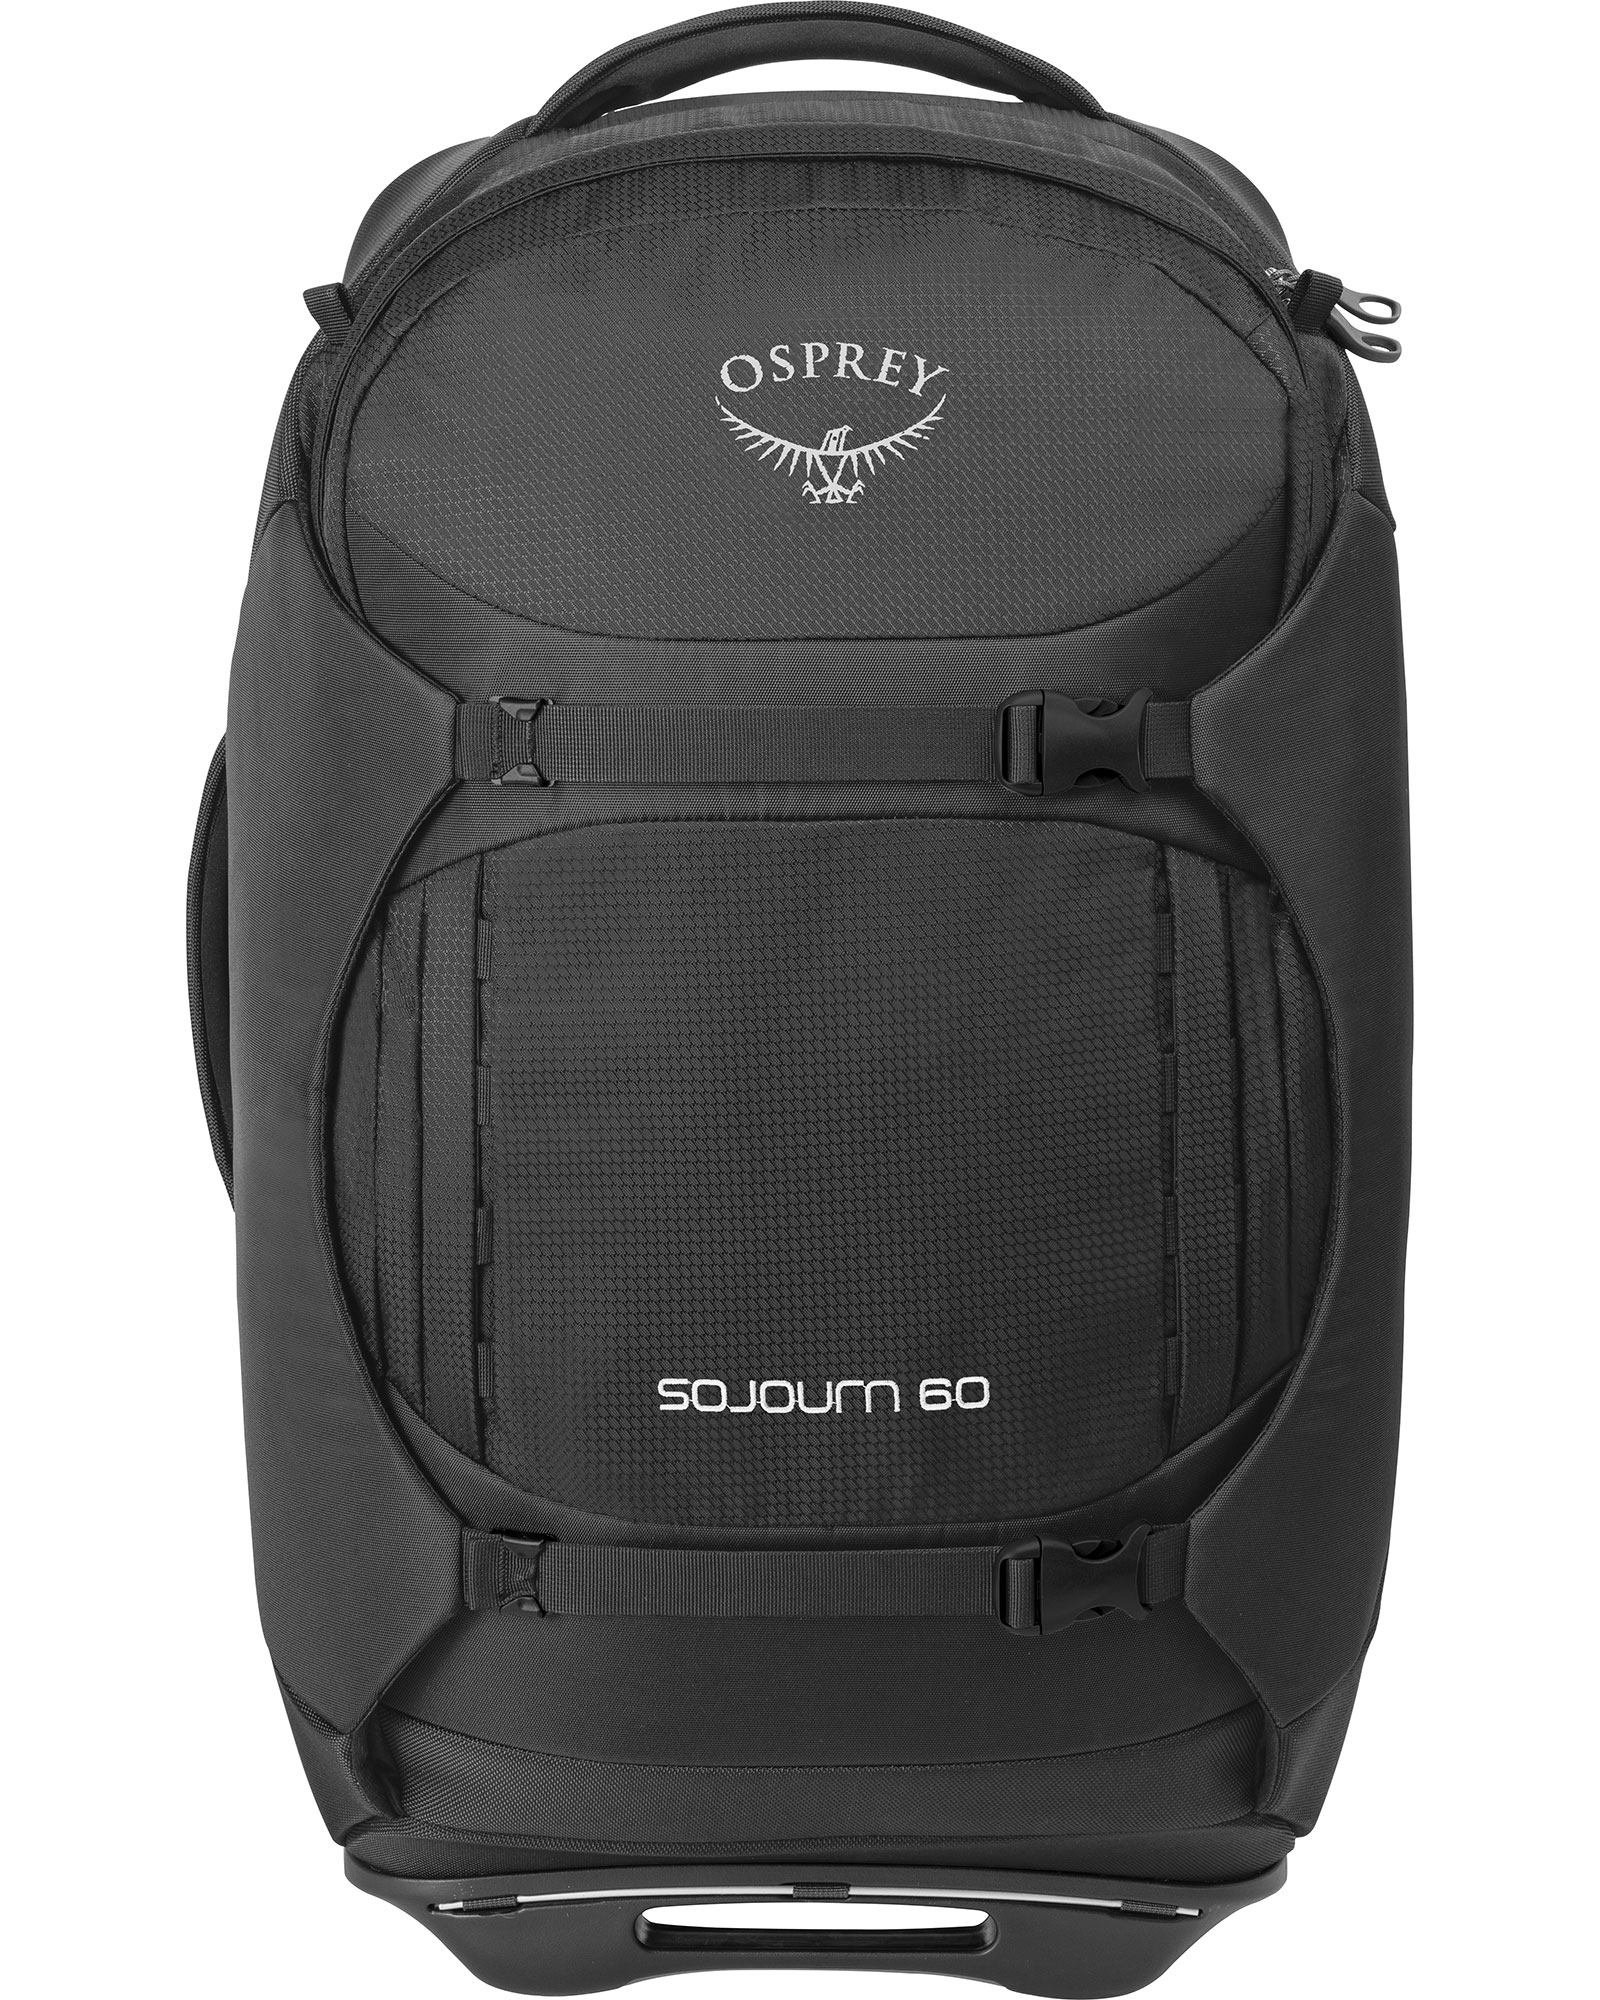 Osprey Sojourn Wheeled Travel Pack 60L - black